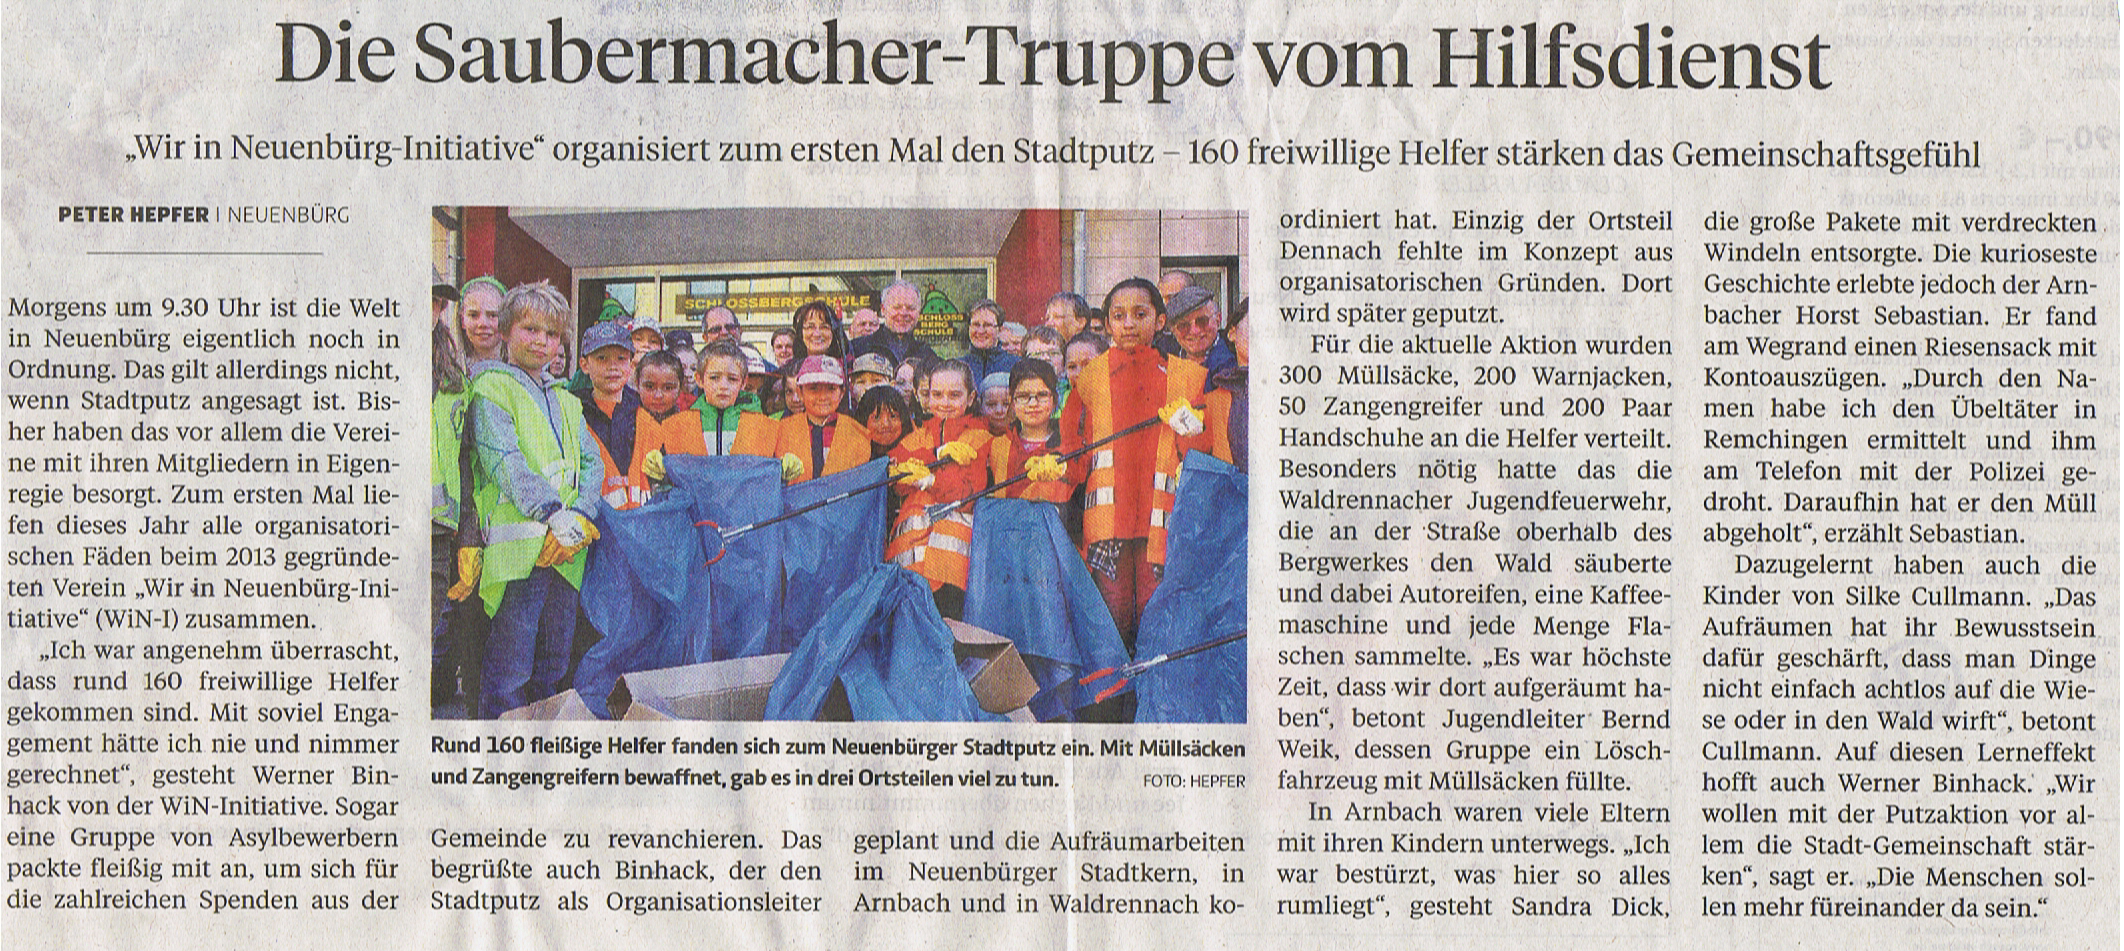 Artikel über den Stadtputz 2014 in Neuenbürg in der Pforzheimer Zeitung vom 5. APril 2014